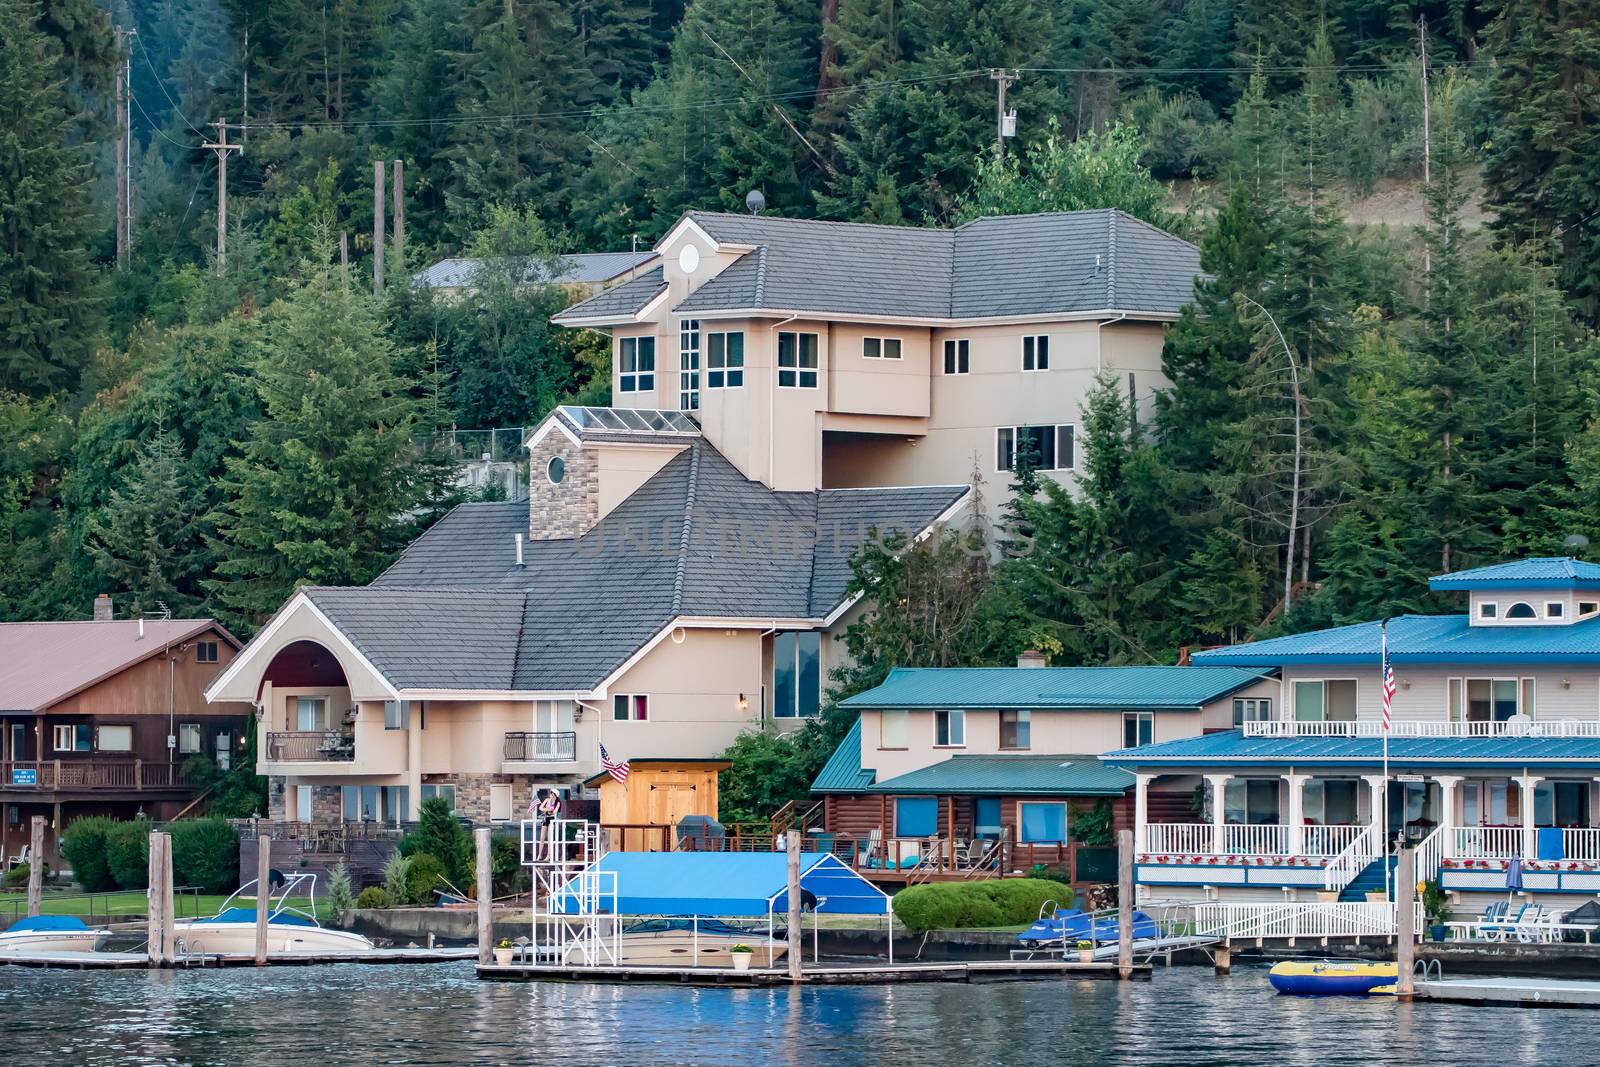 Homes on Lake Coeur d'Alene, Idaho